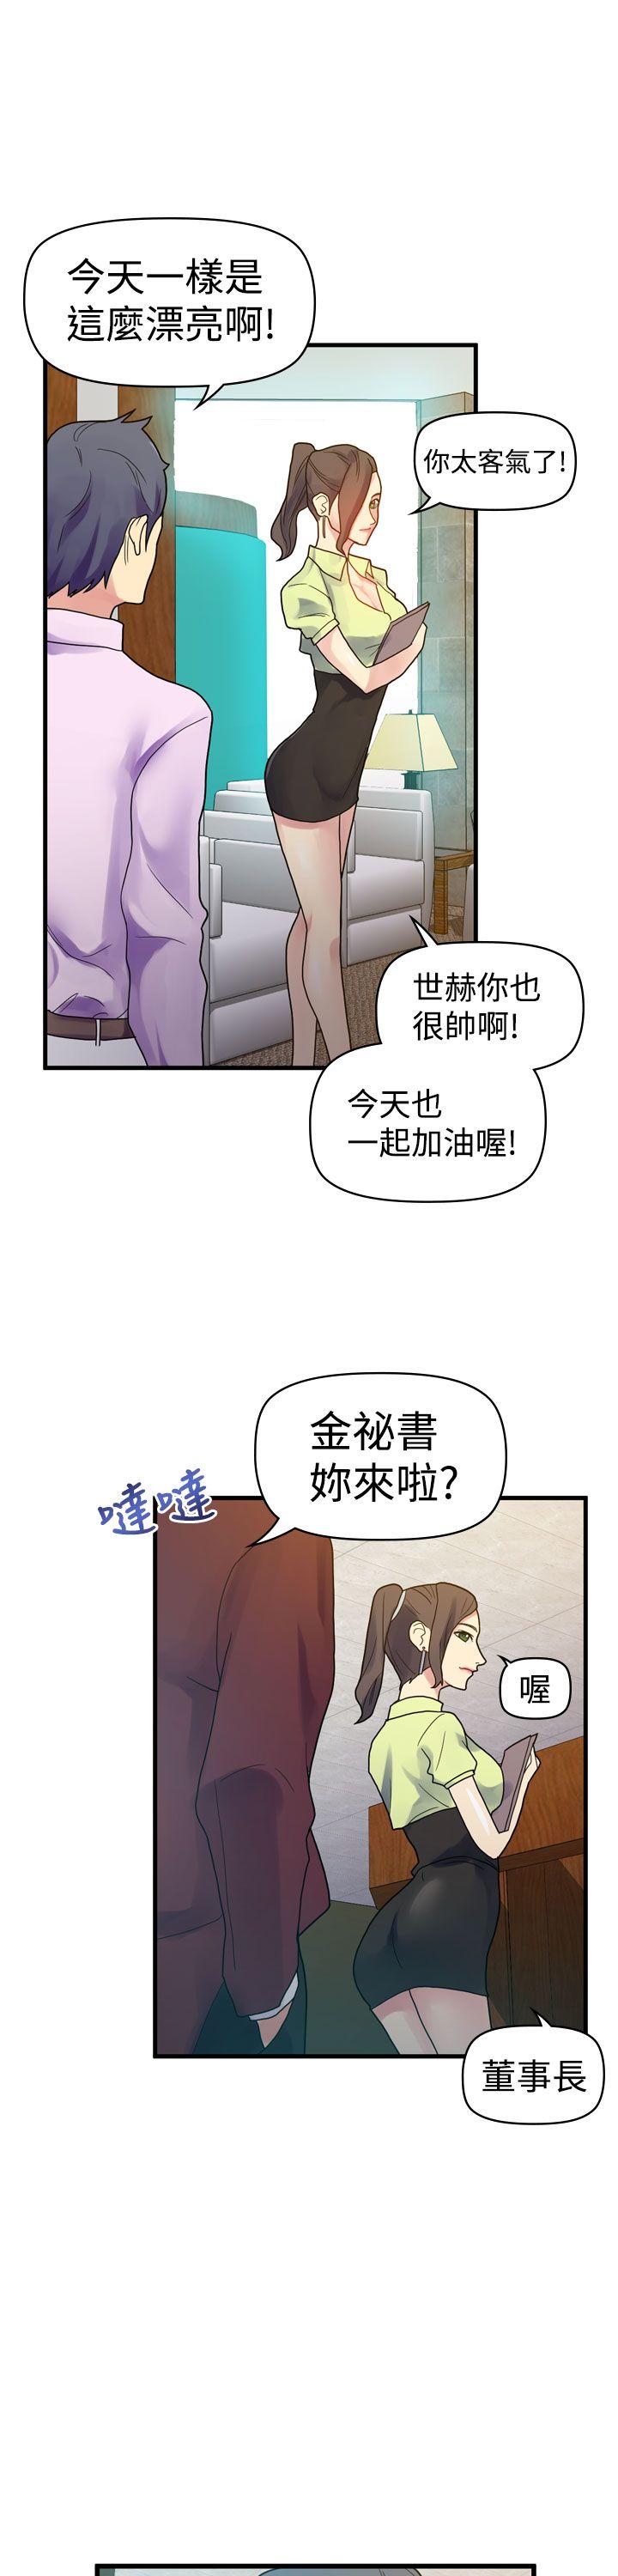 韩国污漫画 幻想中的她(完結) 第9话 31